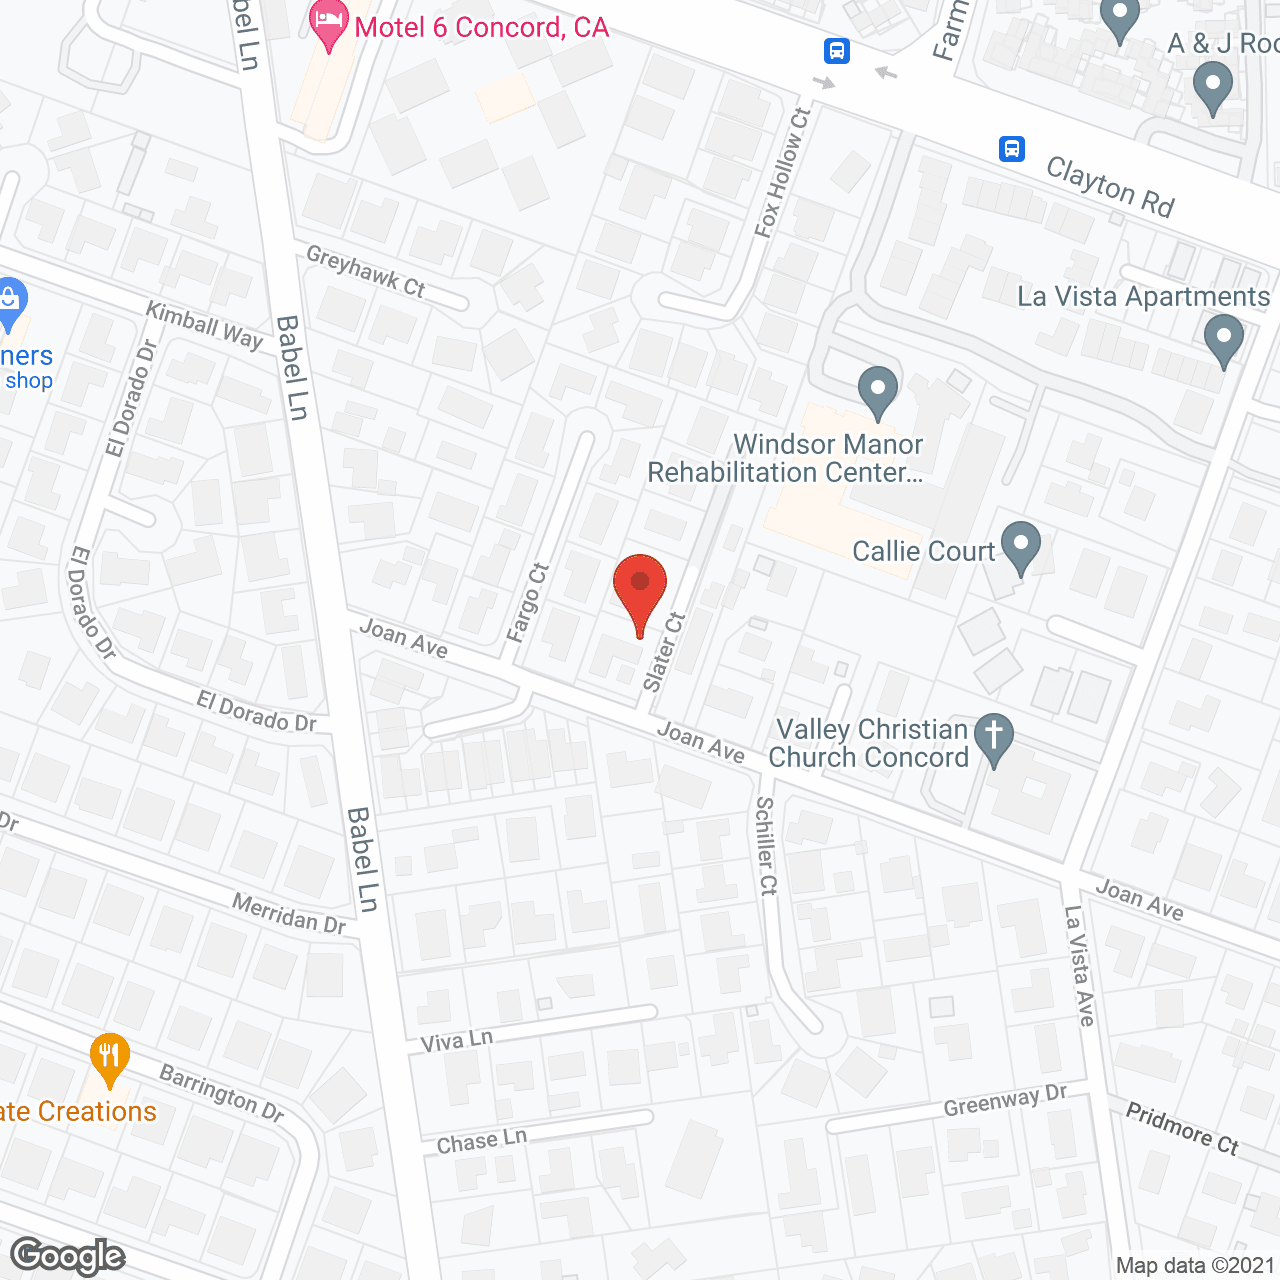 Trinityville in google map